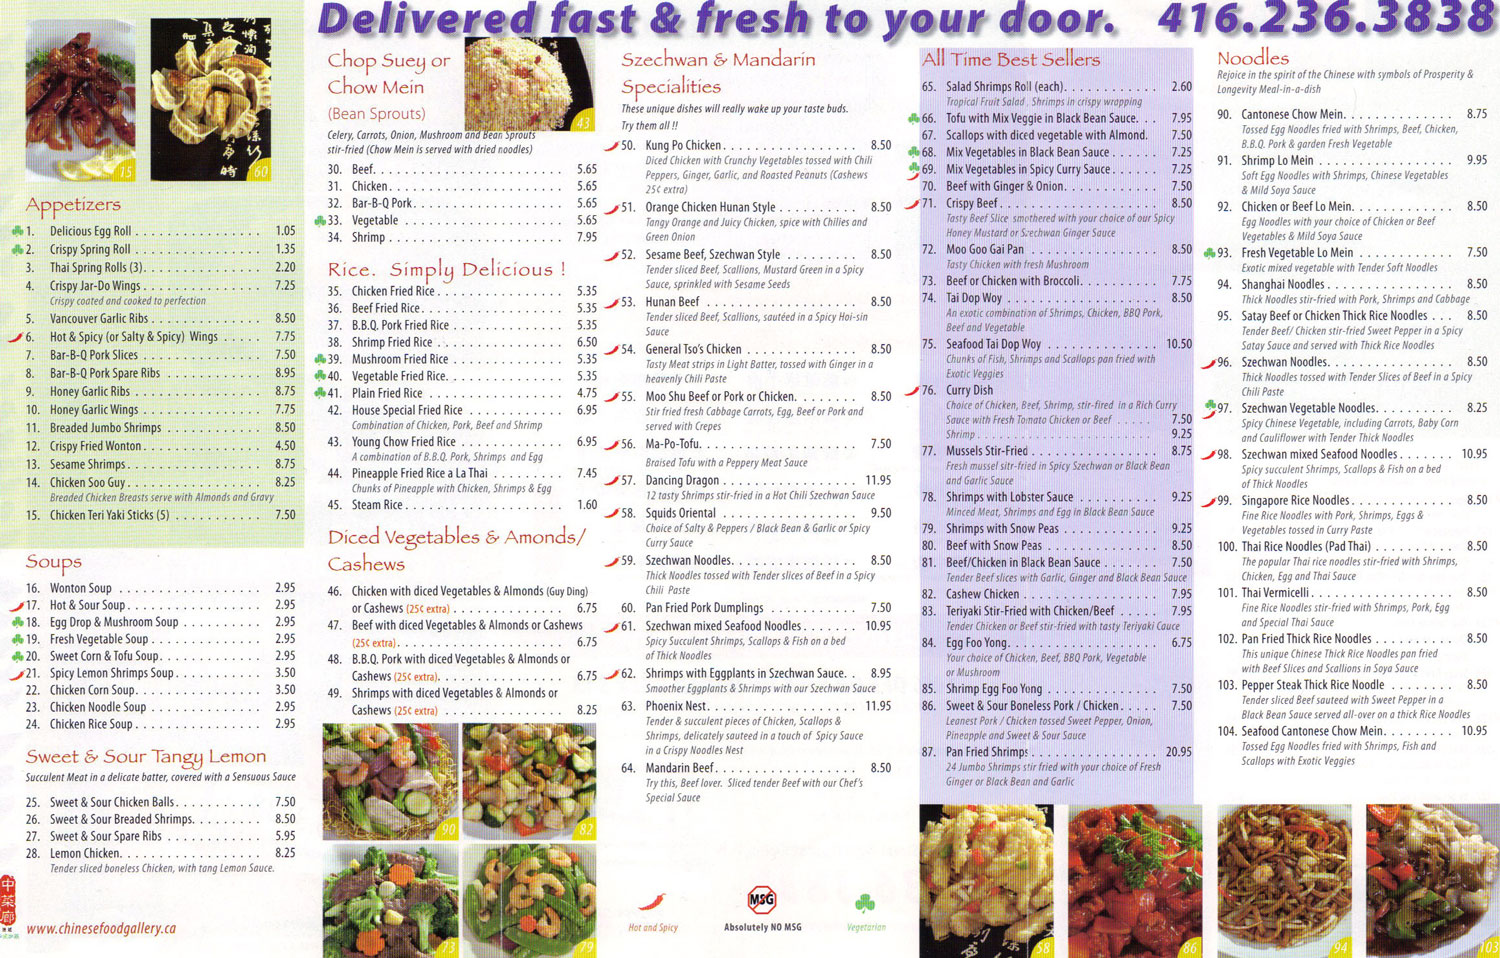 Chinese Food Gallery Menu - Page 2!